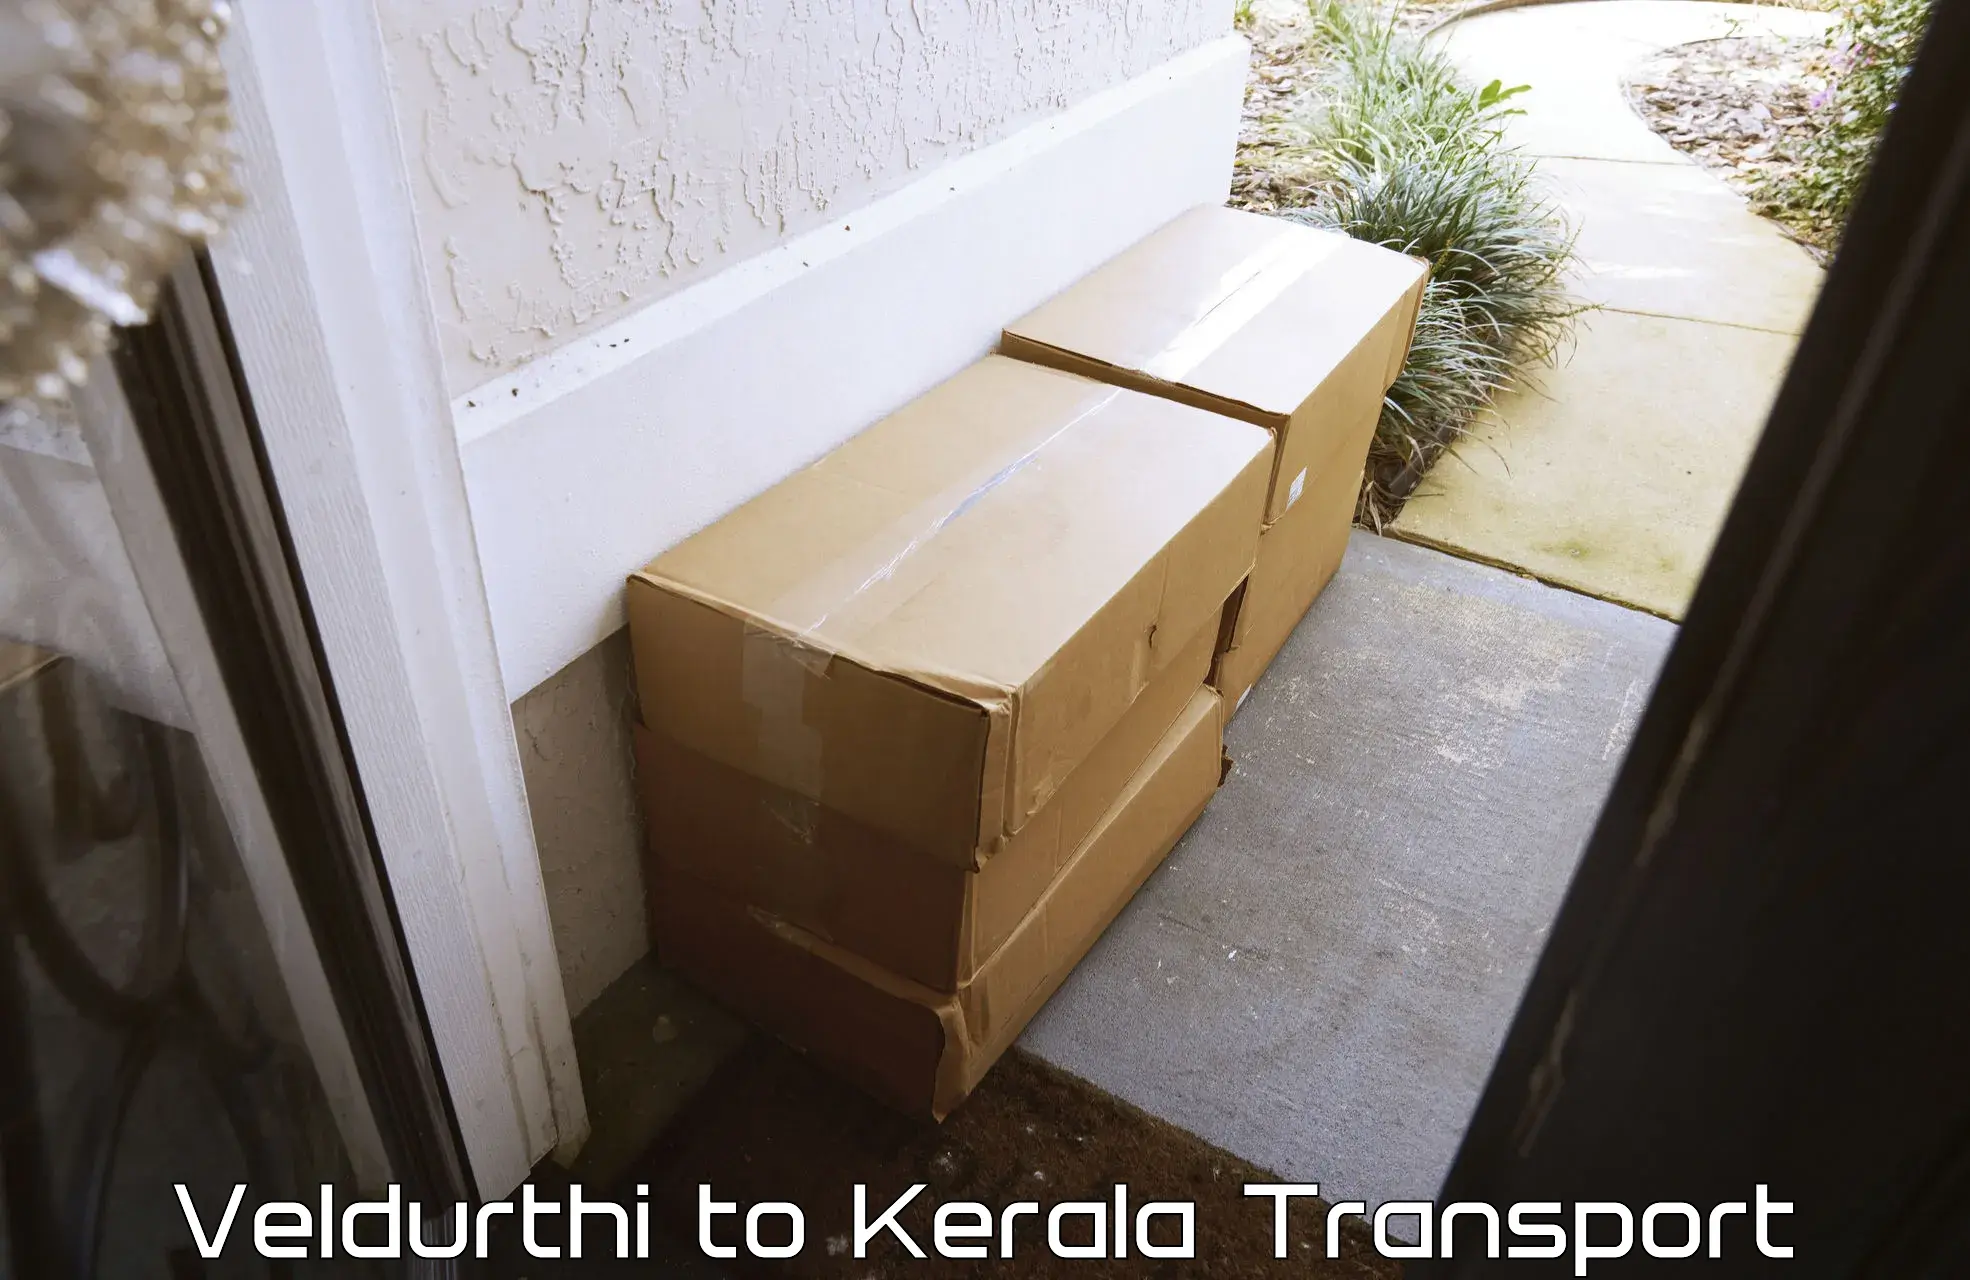 International cargo transportation services Veldurthi to Cochin Port Kochi